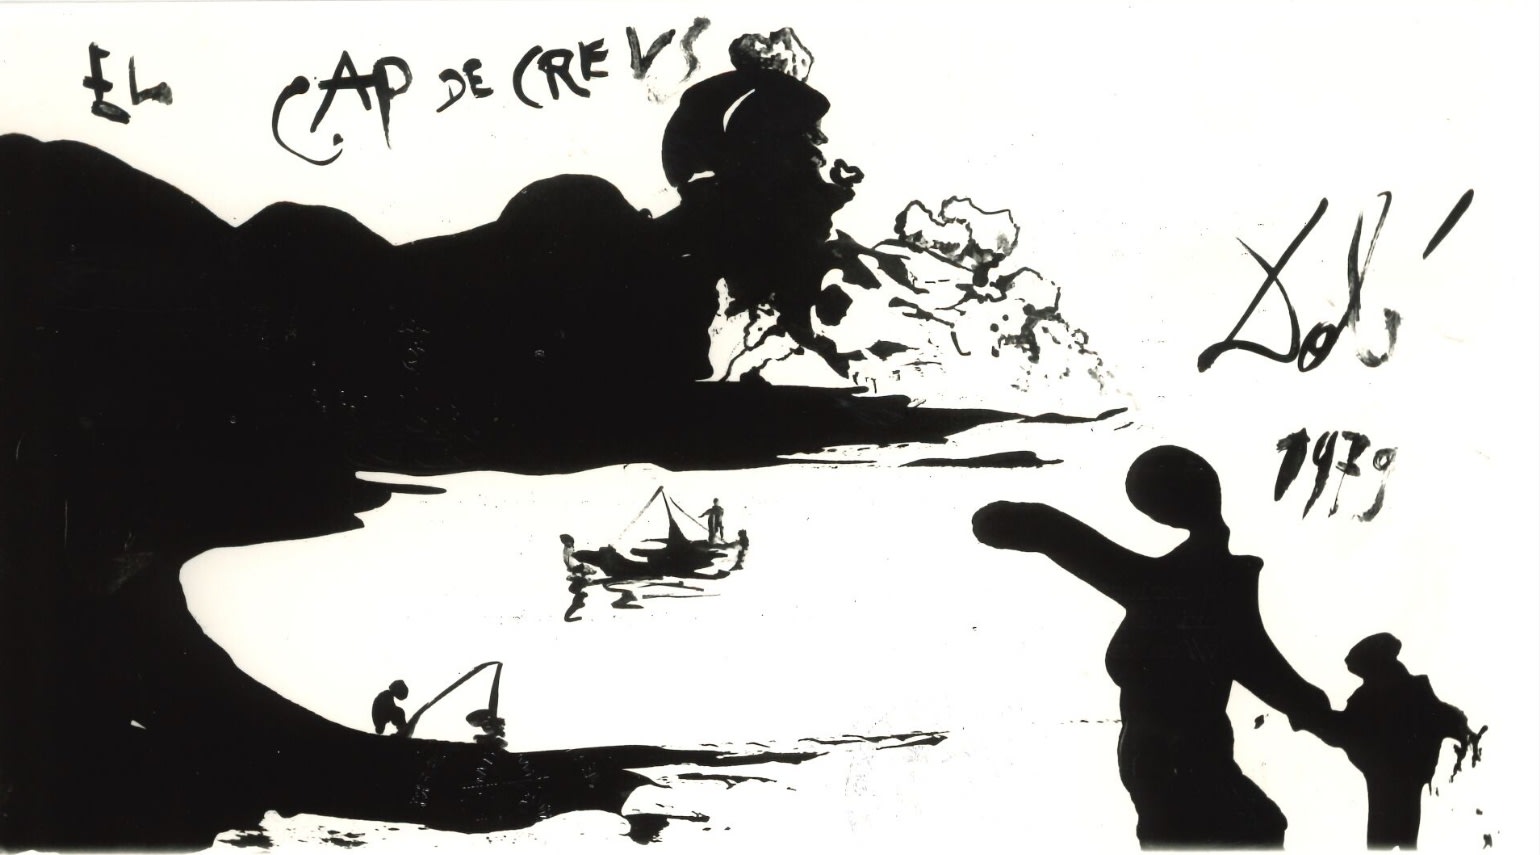 Salvador Dalí, El Cap de Creus, 1979